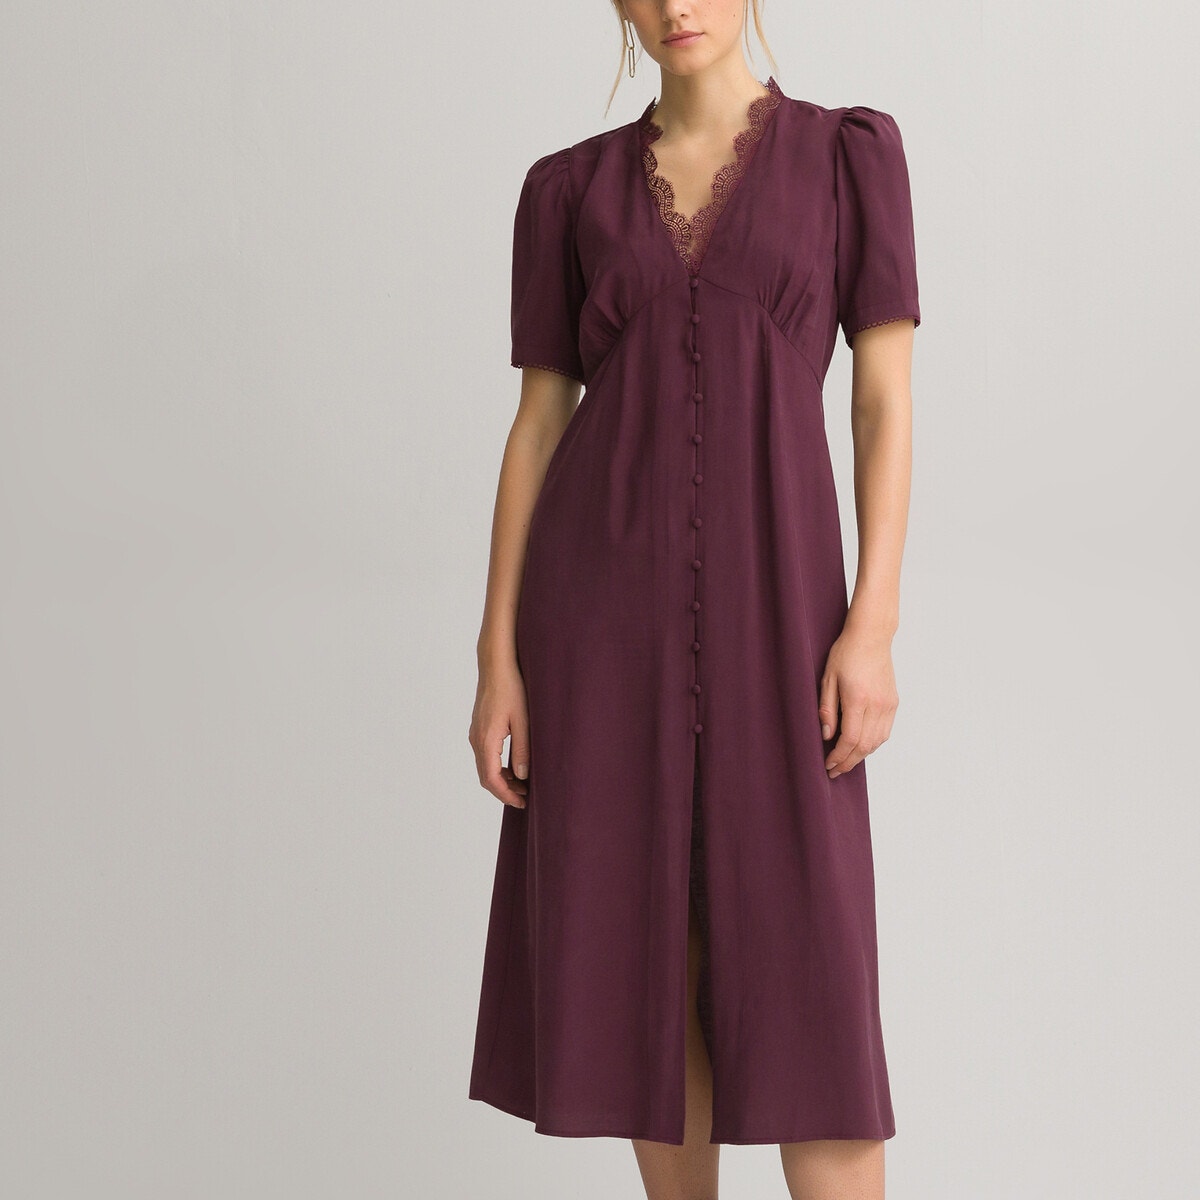 ΓΥΝΑΙΚΑ | Φορέματα | Κοντά μανίκια Μακρύ κοντομάνικο φόρεμα με V